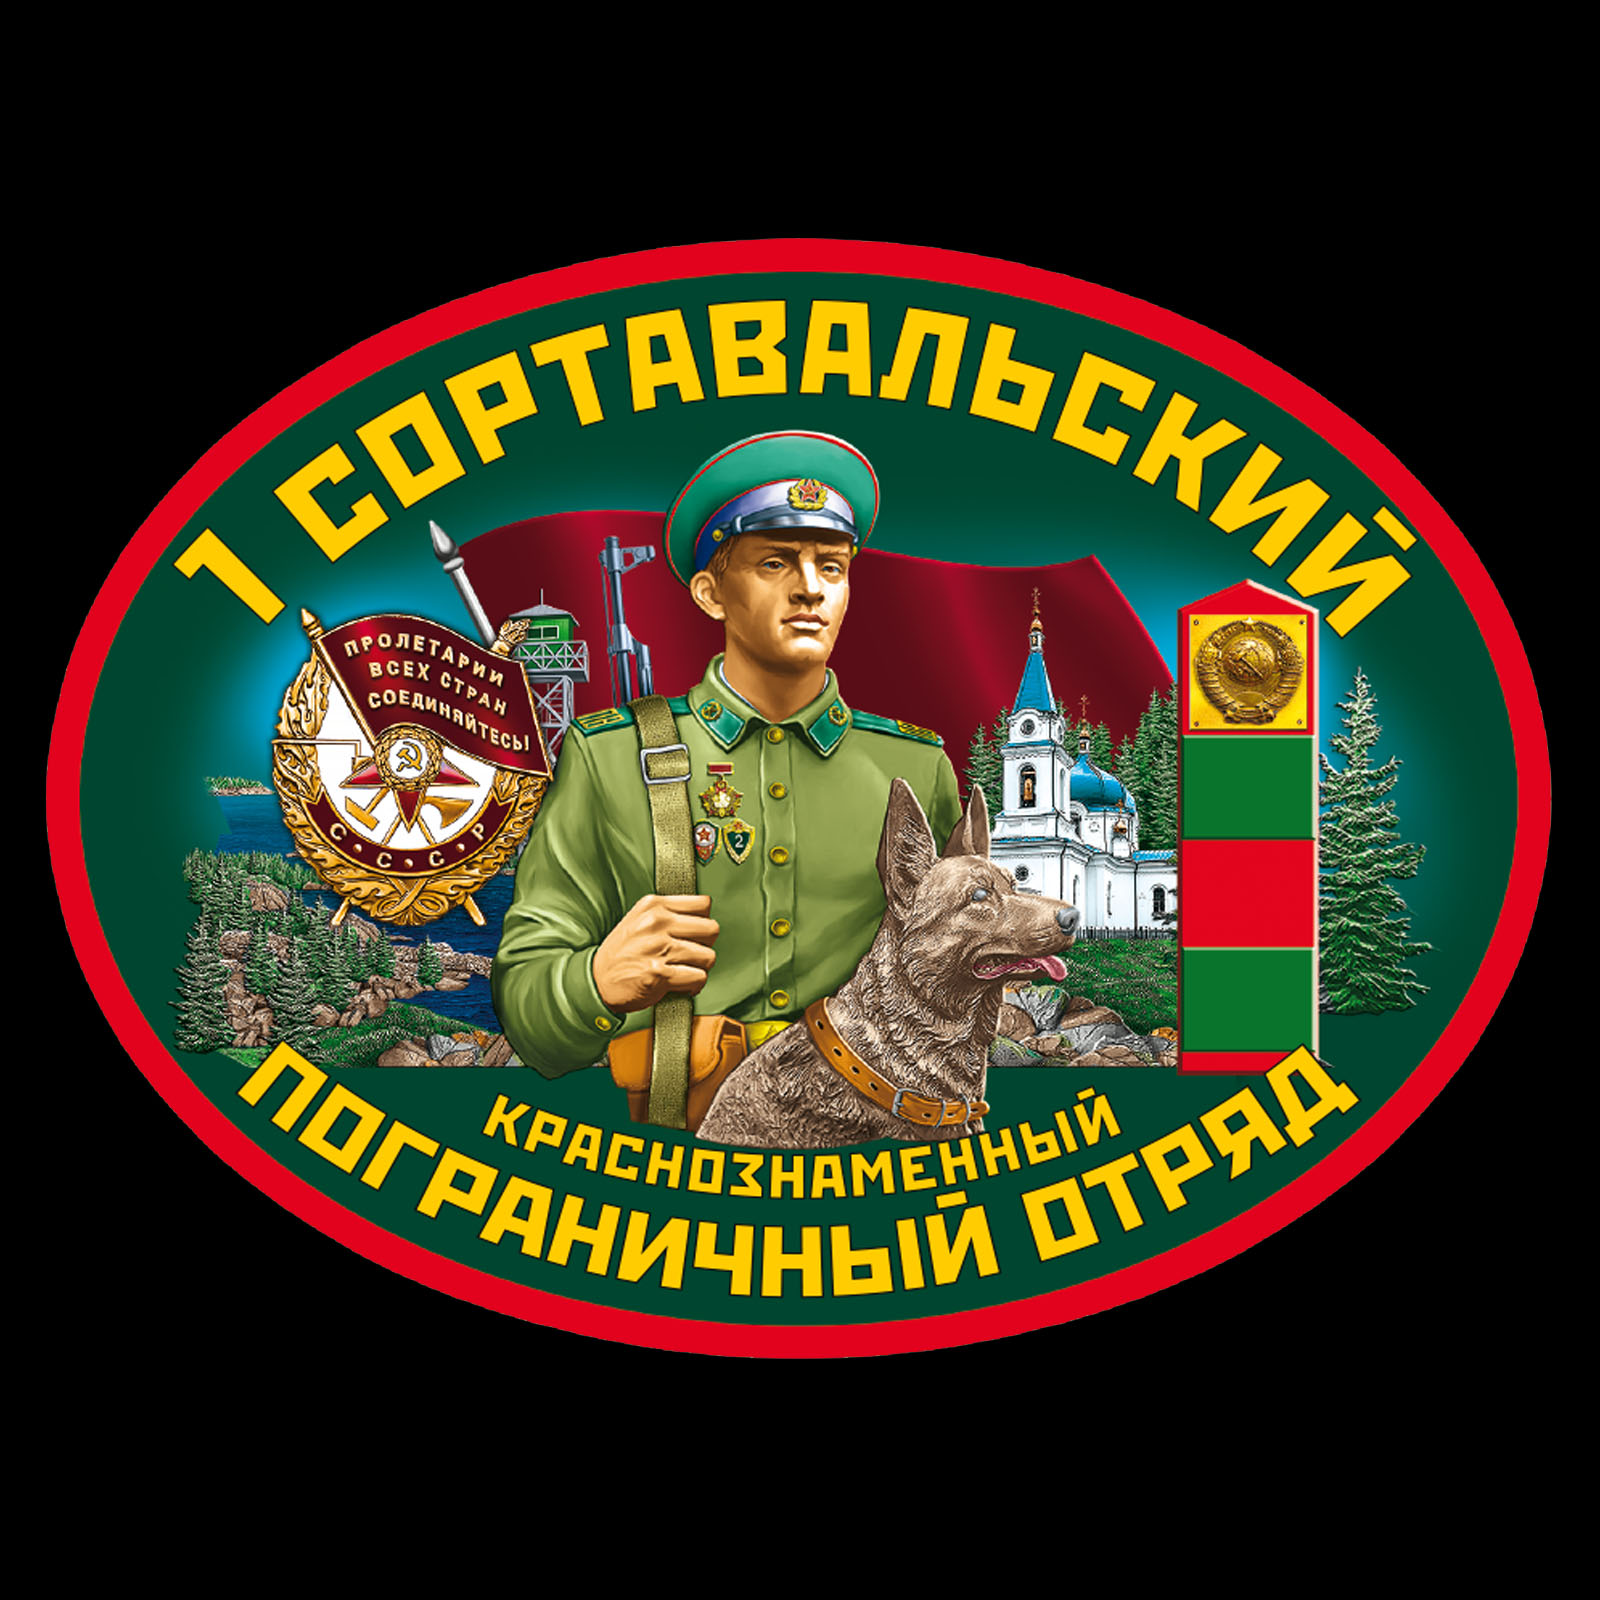 Классическая футболка «1-й Сортавальский пограничный отряд» 